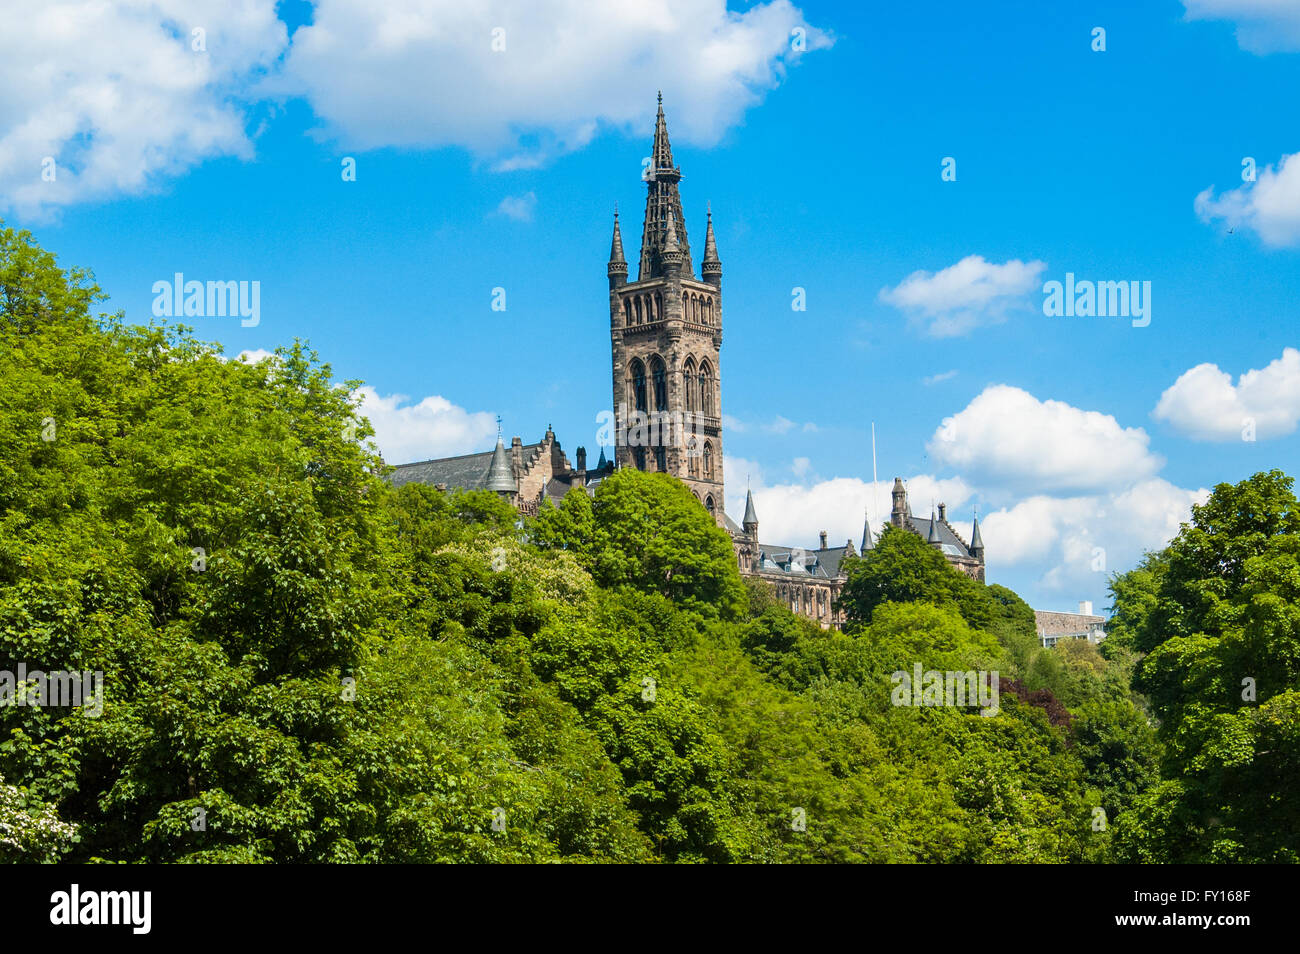 La Universidad de Glasgow, tomado del parque Kelvingrove en un día soleado de verano Foto de stock